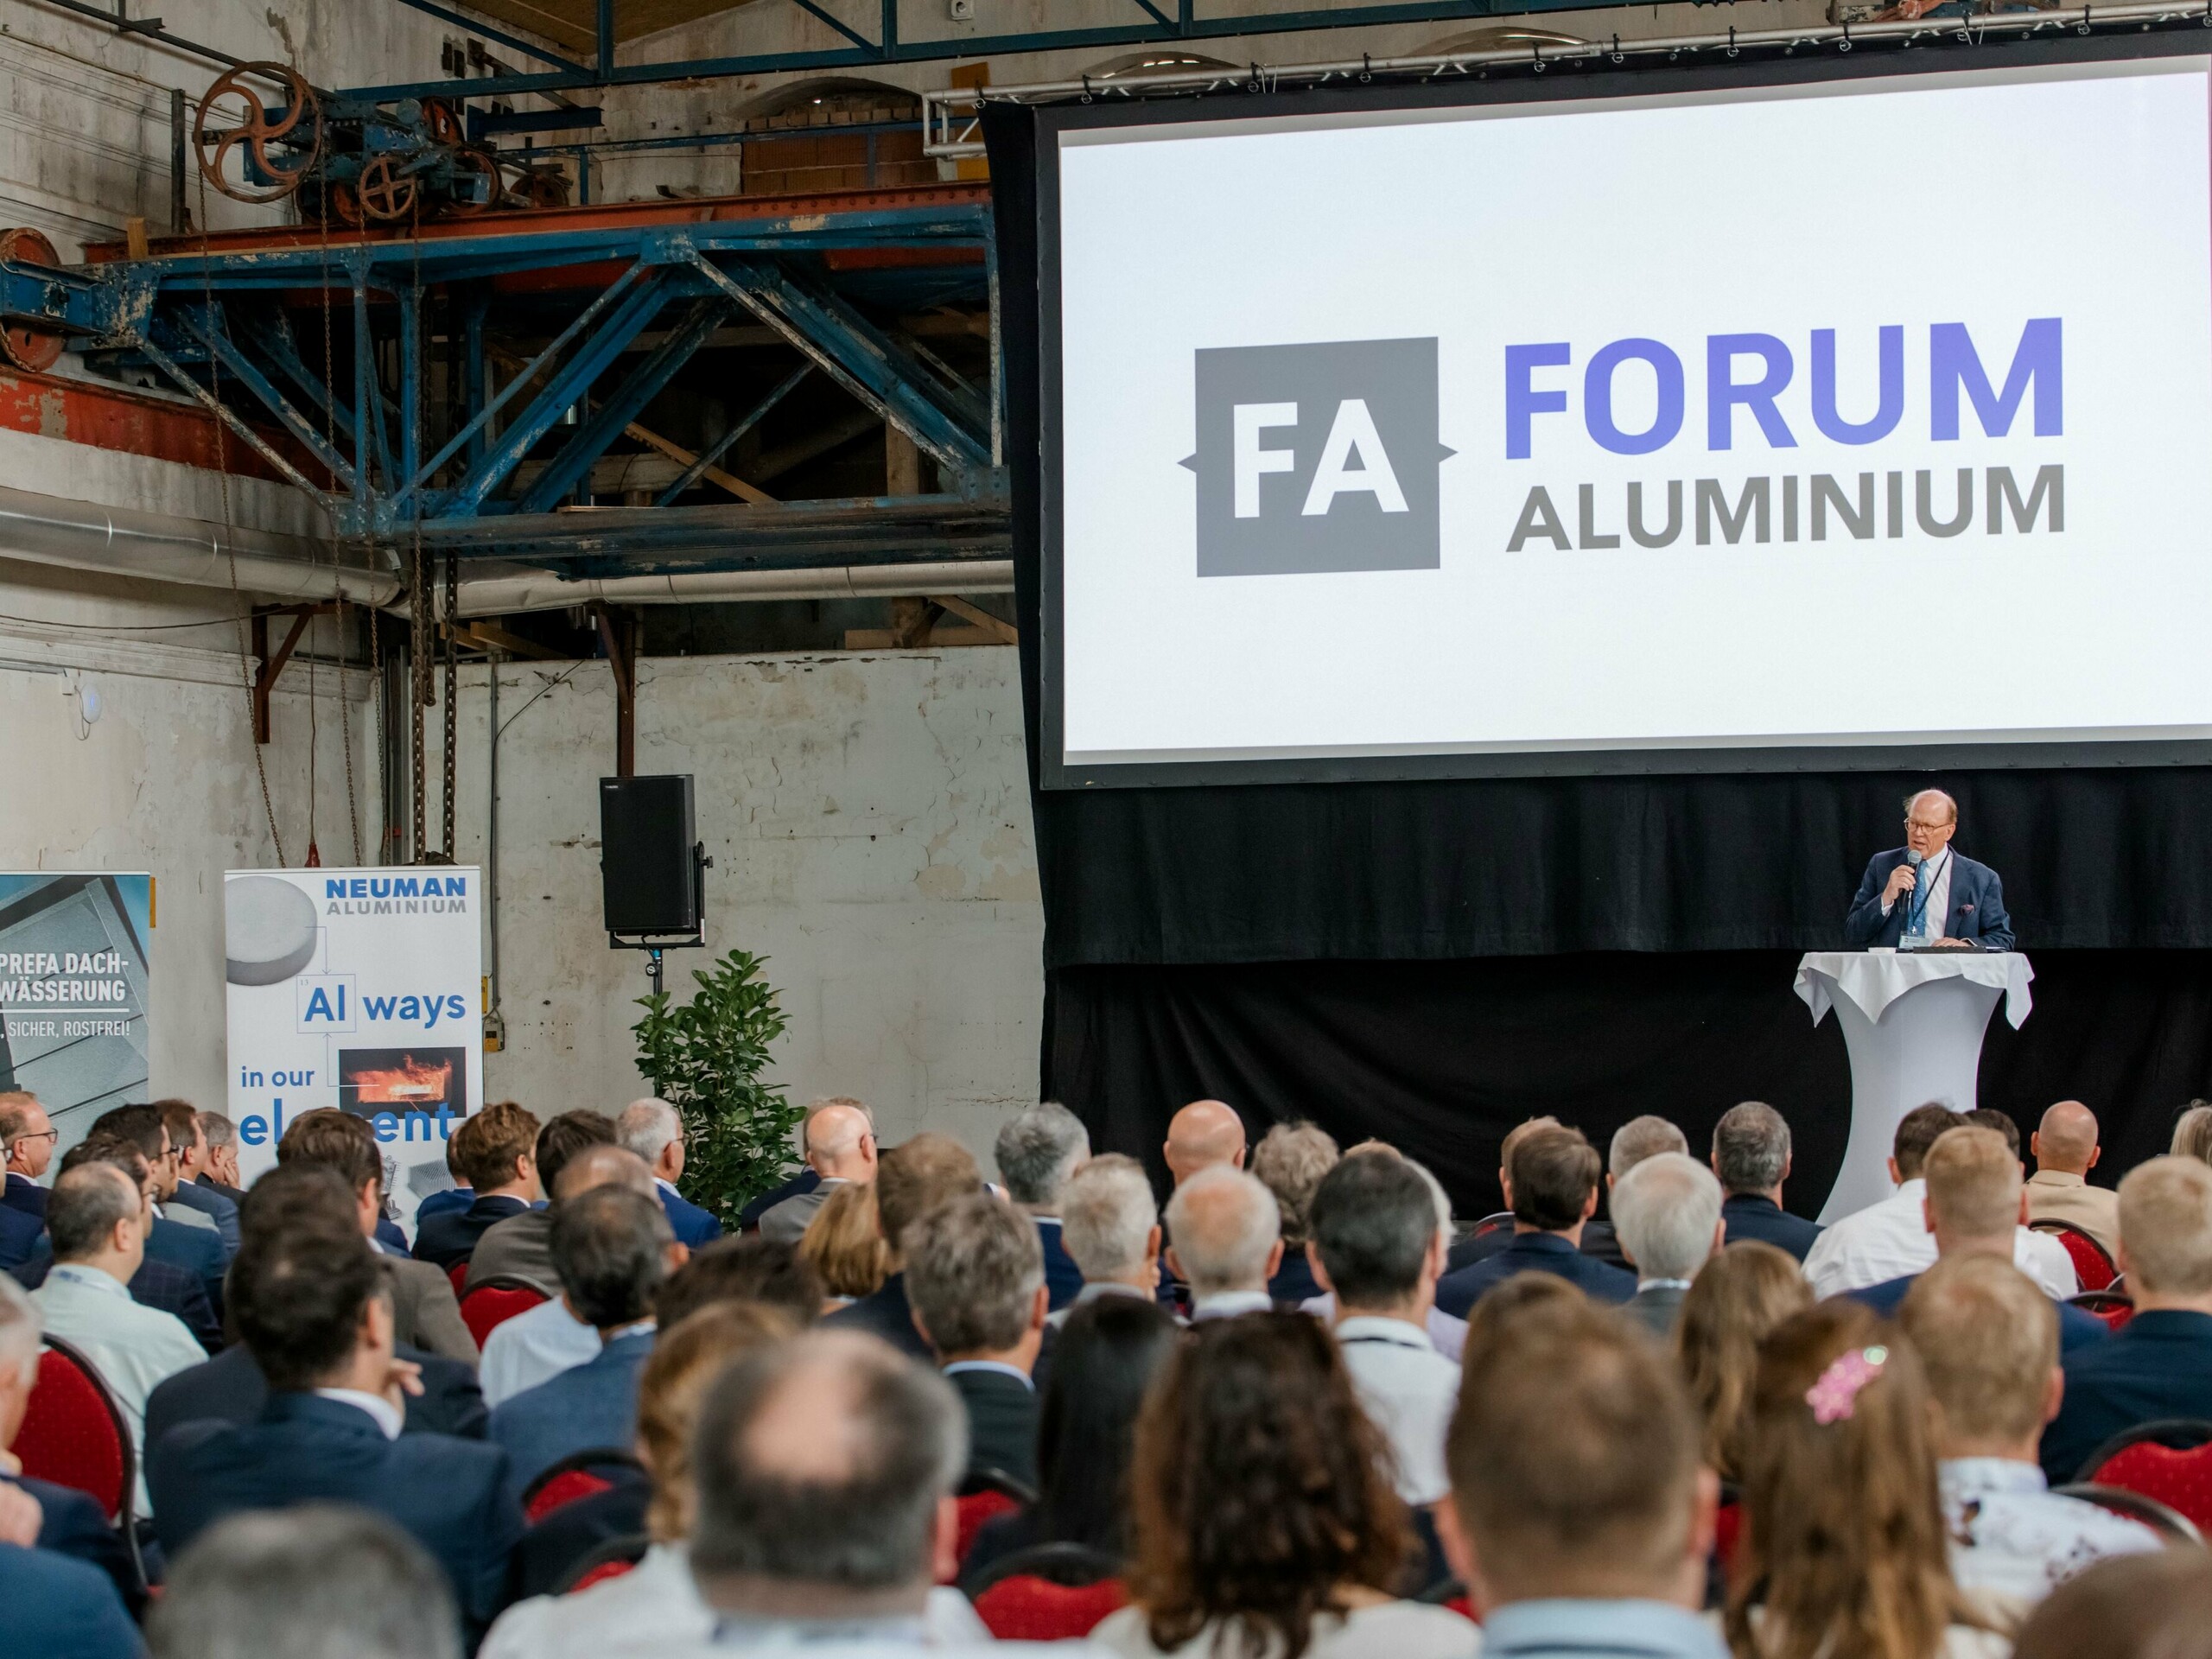 Bild einer Präsentation, auf der Leinwand ist "Forum Aluminium" abgebildet.